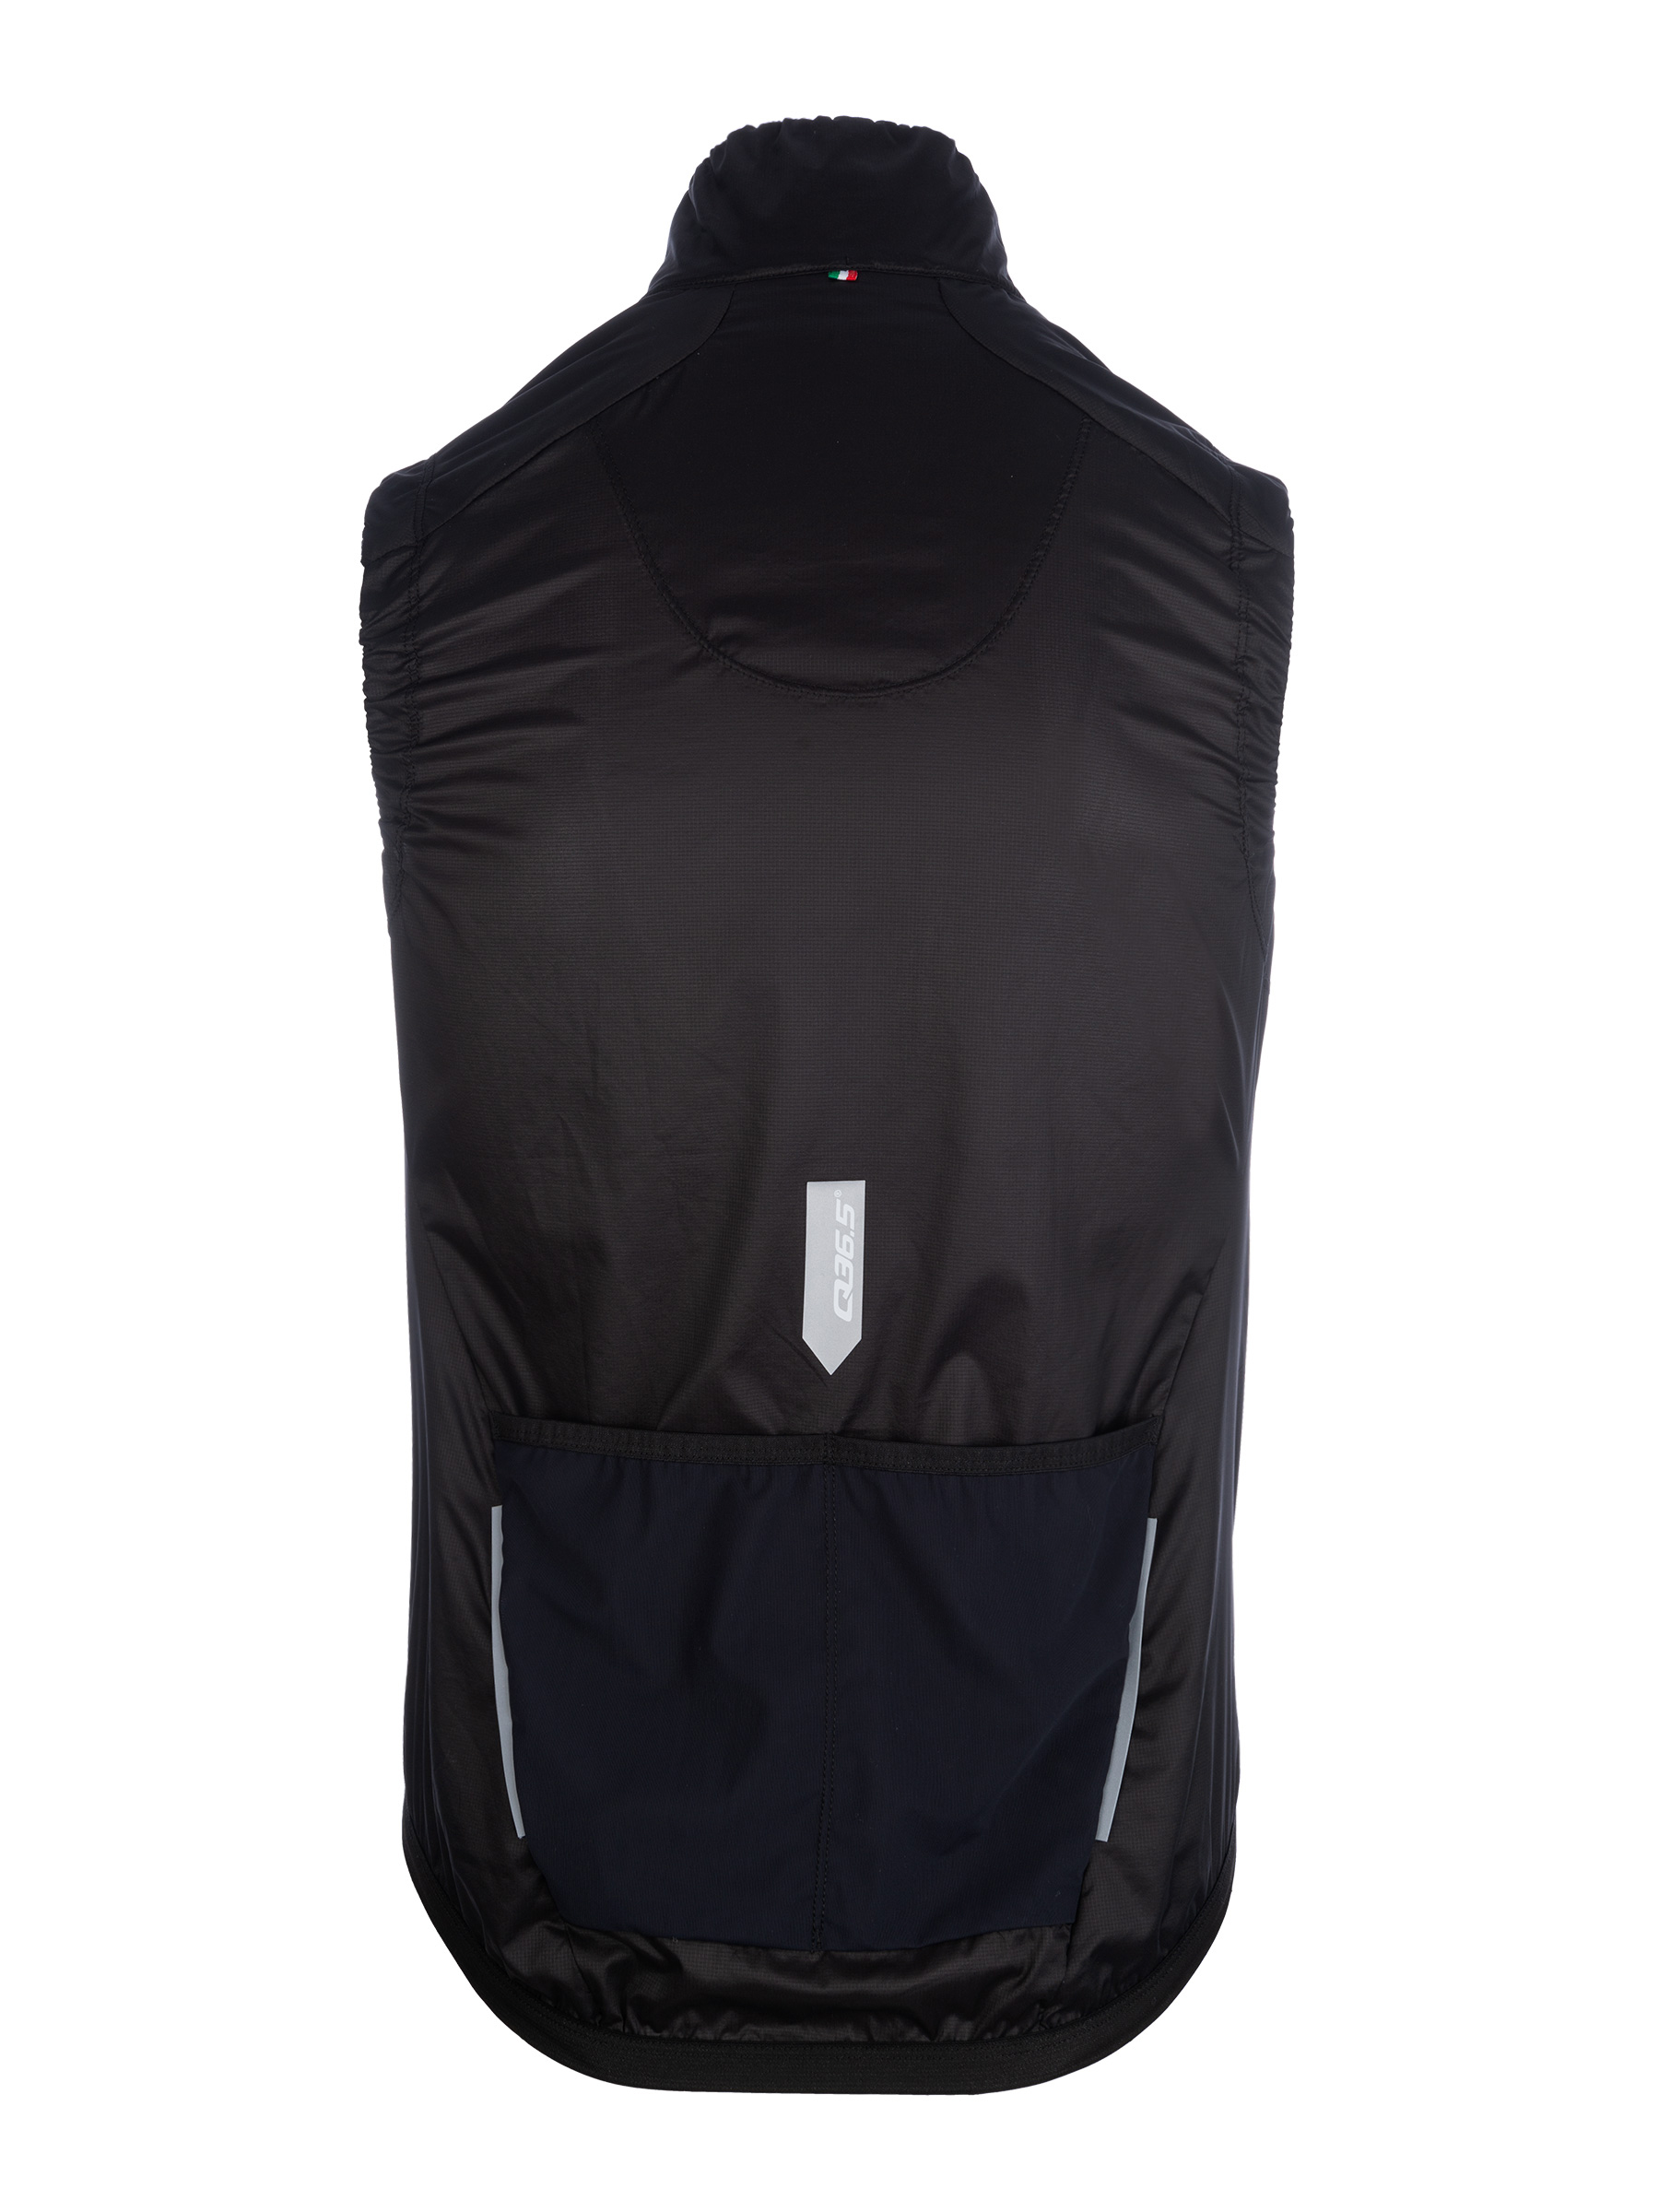 Adventure insulation vest black • Q36.5